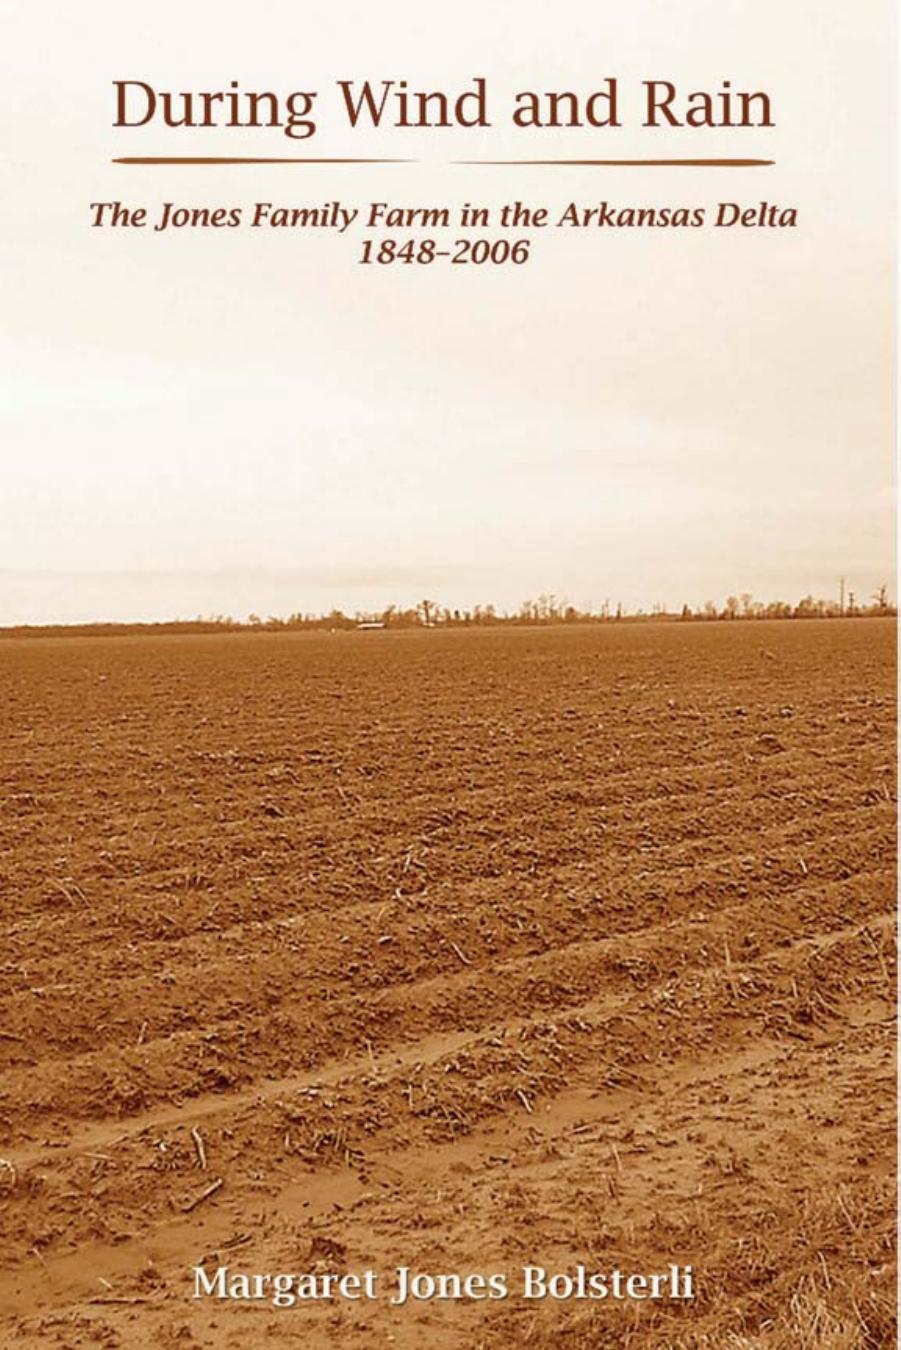 During Wind and Rain : The Jones Family Farm in the Arkansas Delta 1848-2006 by Margaret Jones Bolsterli